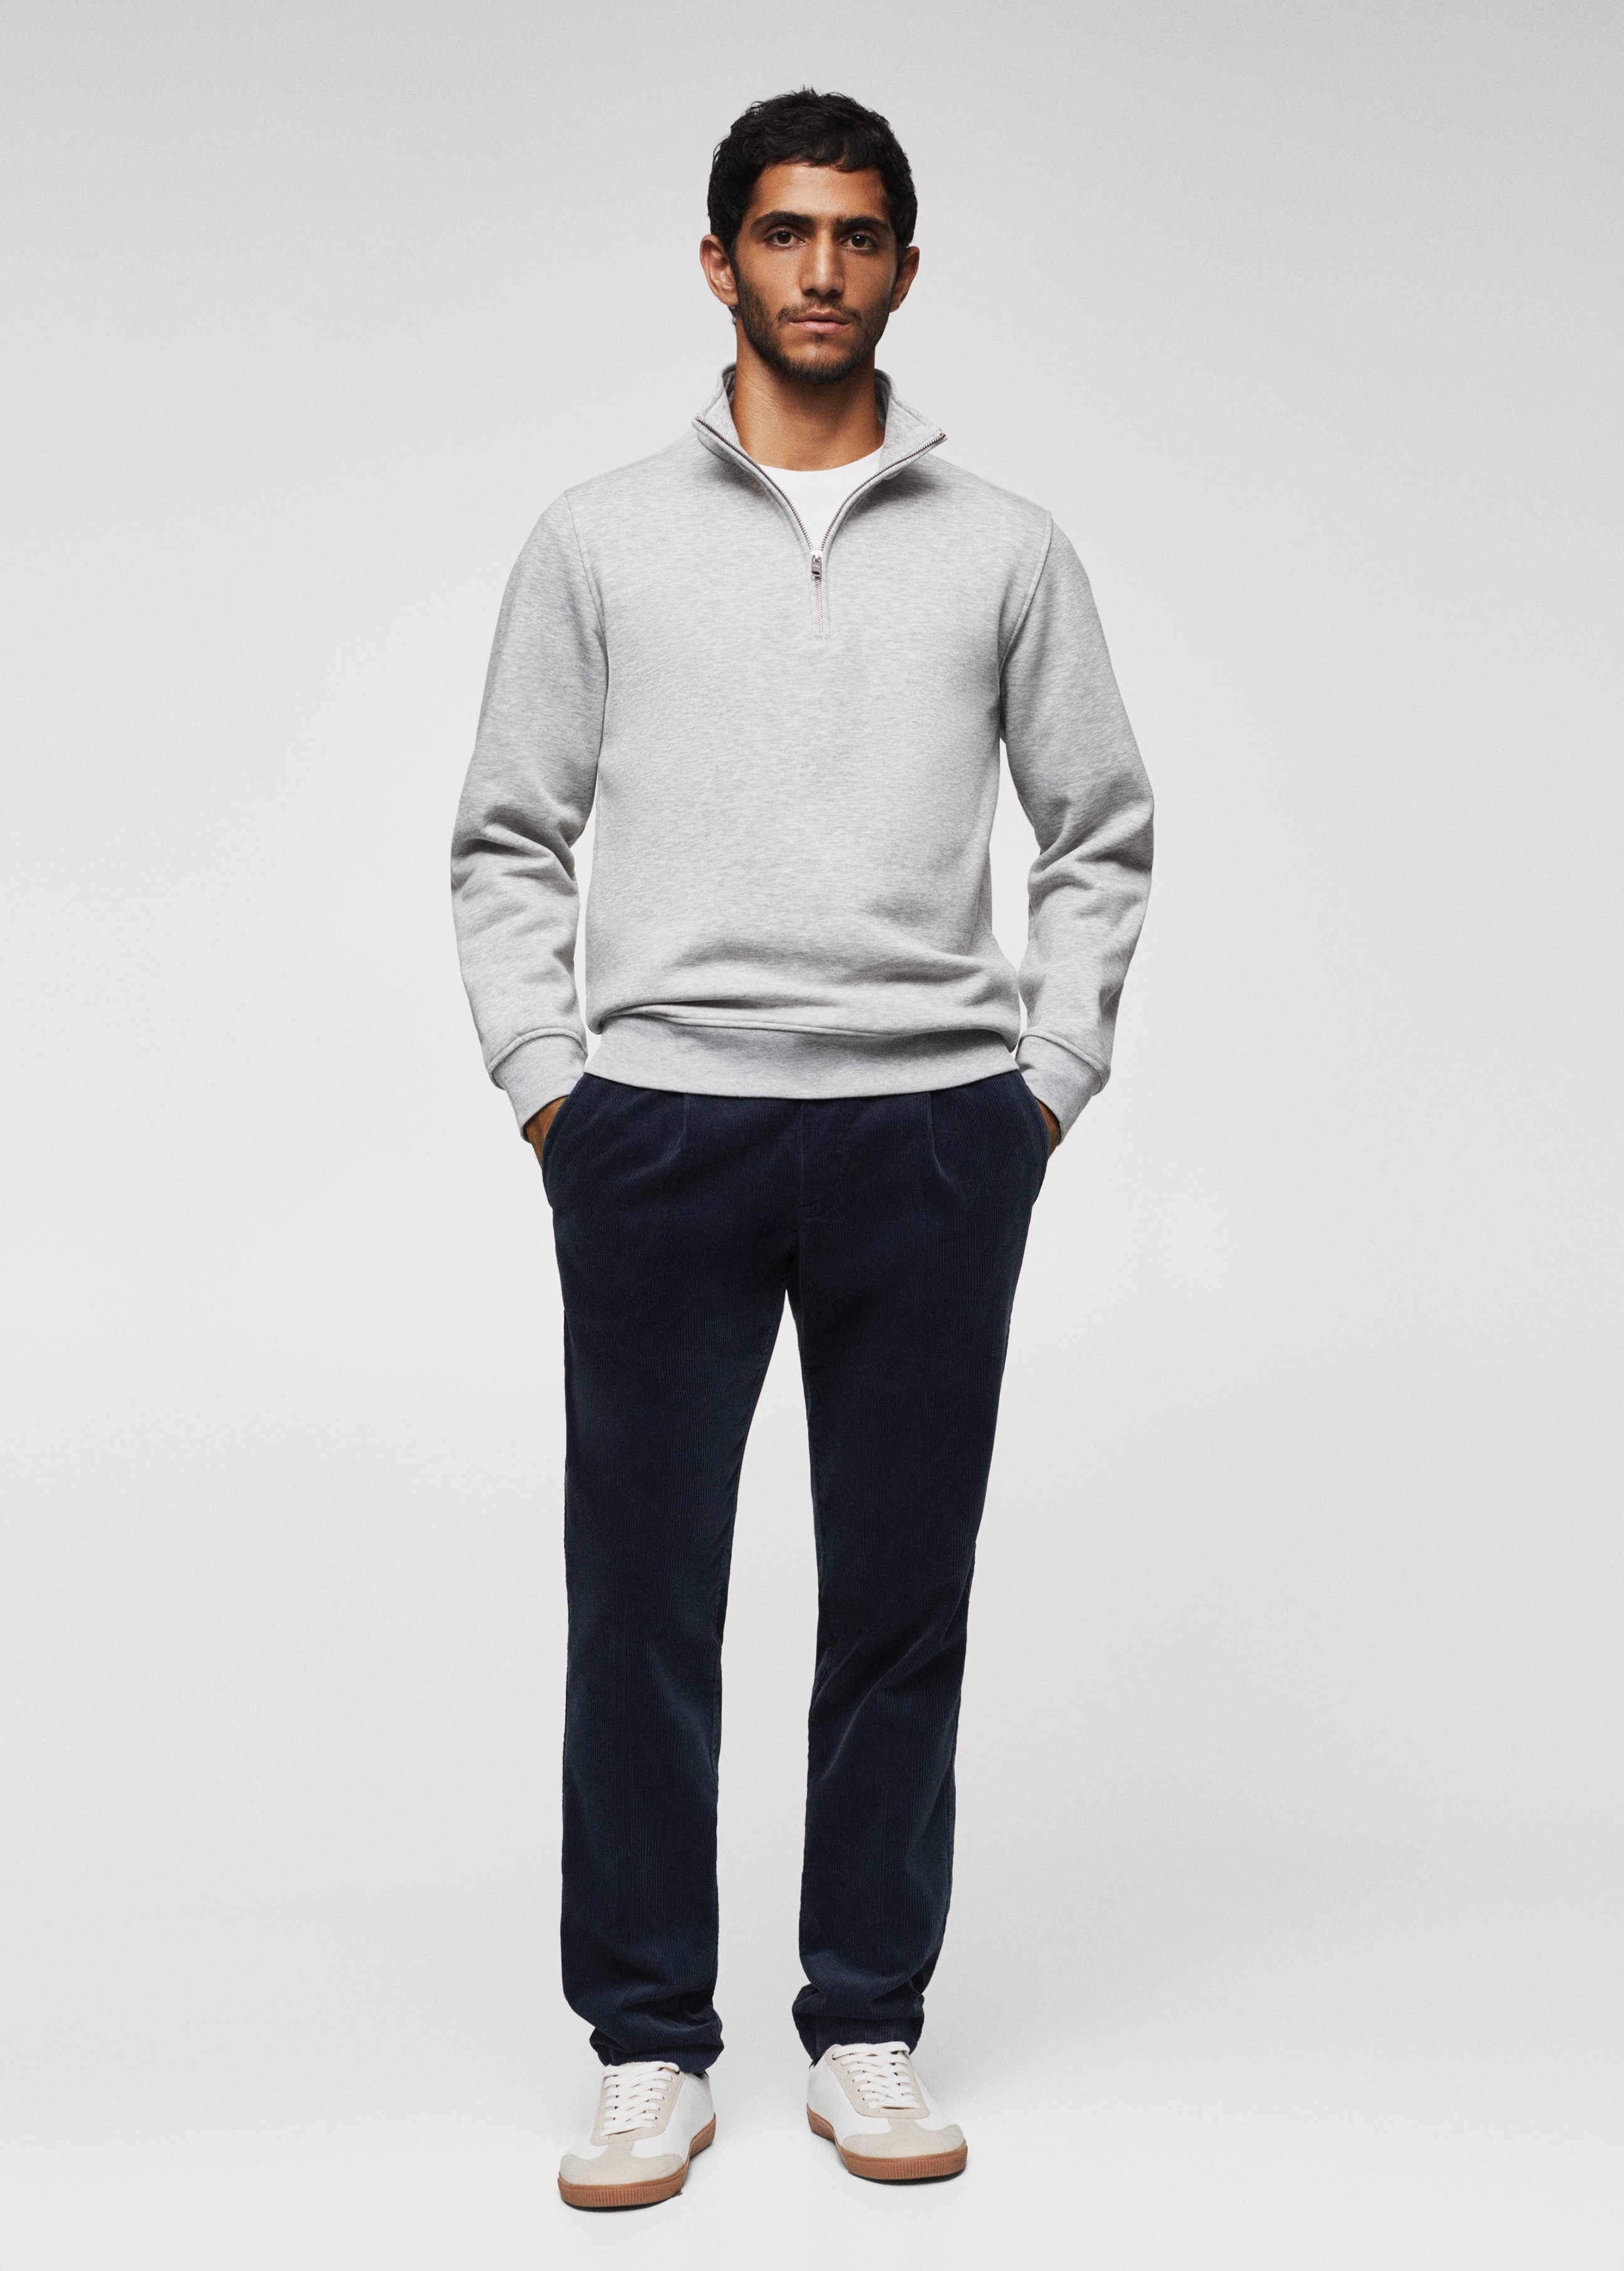 Cotton sweatshirt with zip neck - General plane